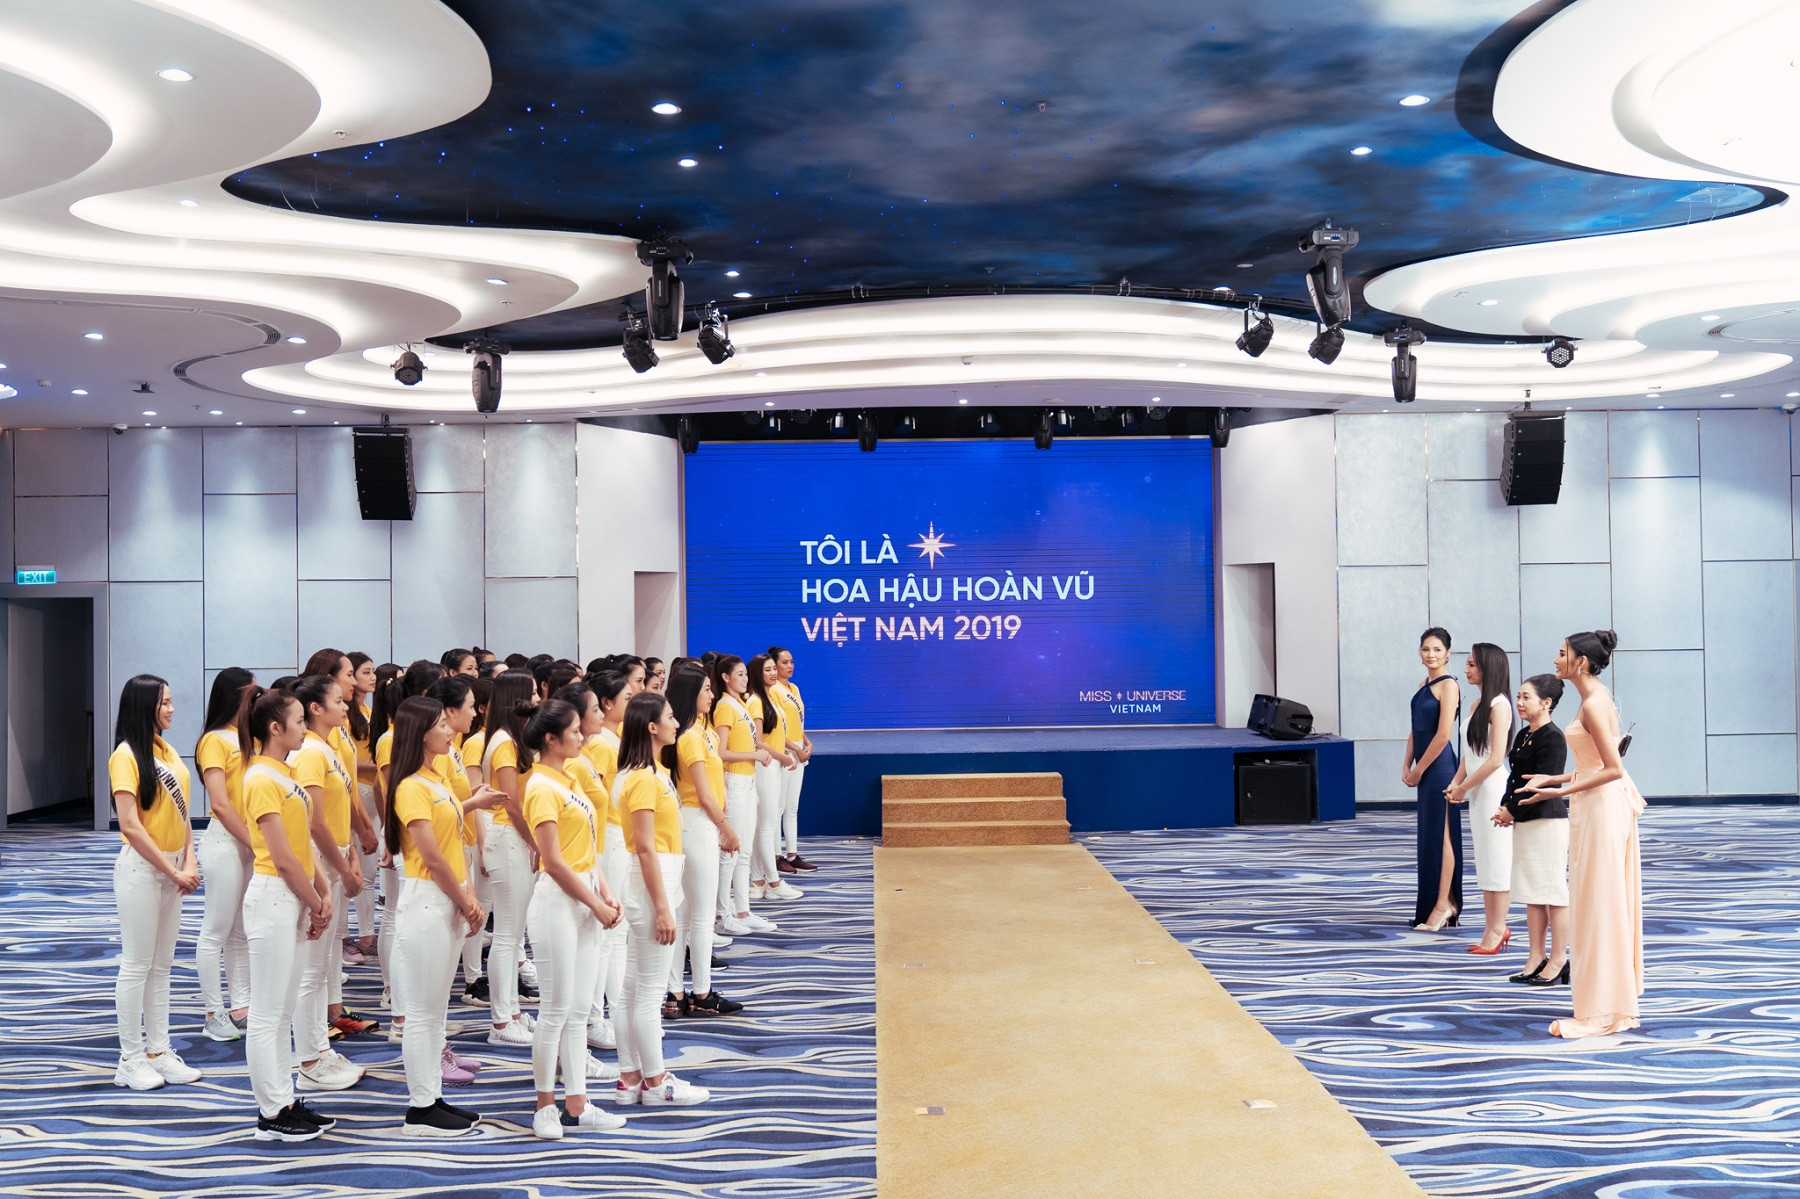 Nam A Bank tư vấn xây dựng doanh nghiệp xã hội cho top 60 hoa hậu hoàn vũ Việt Nam 2019